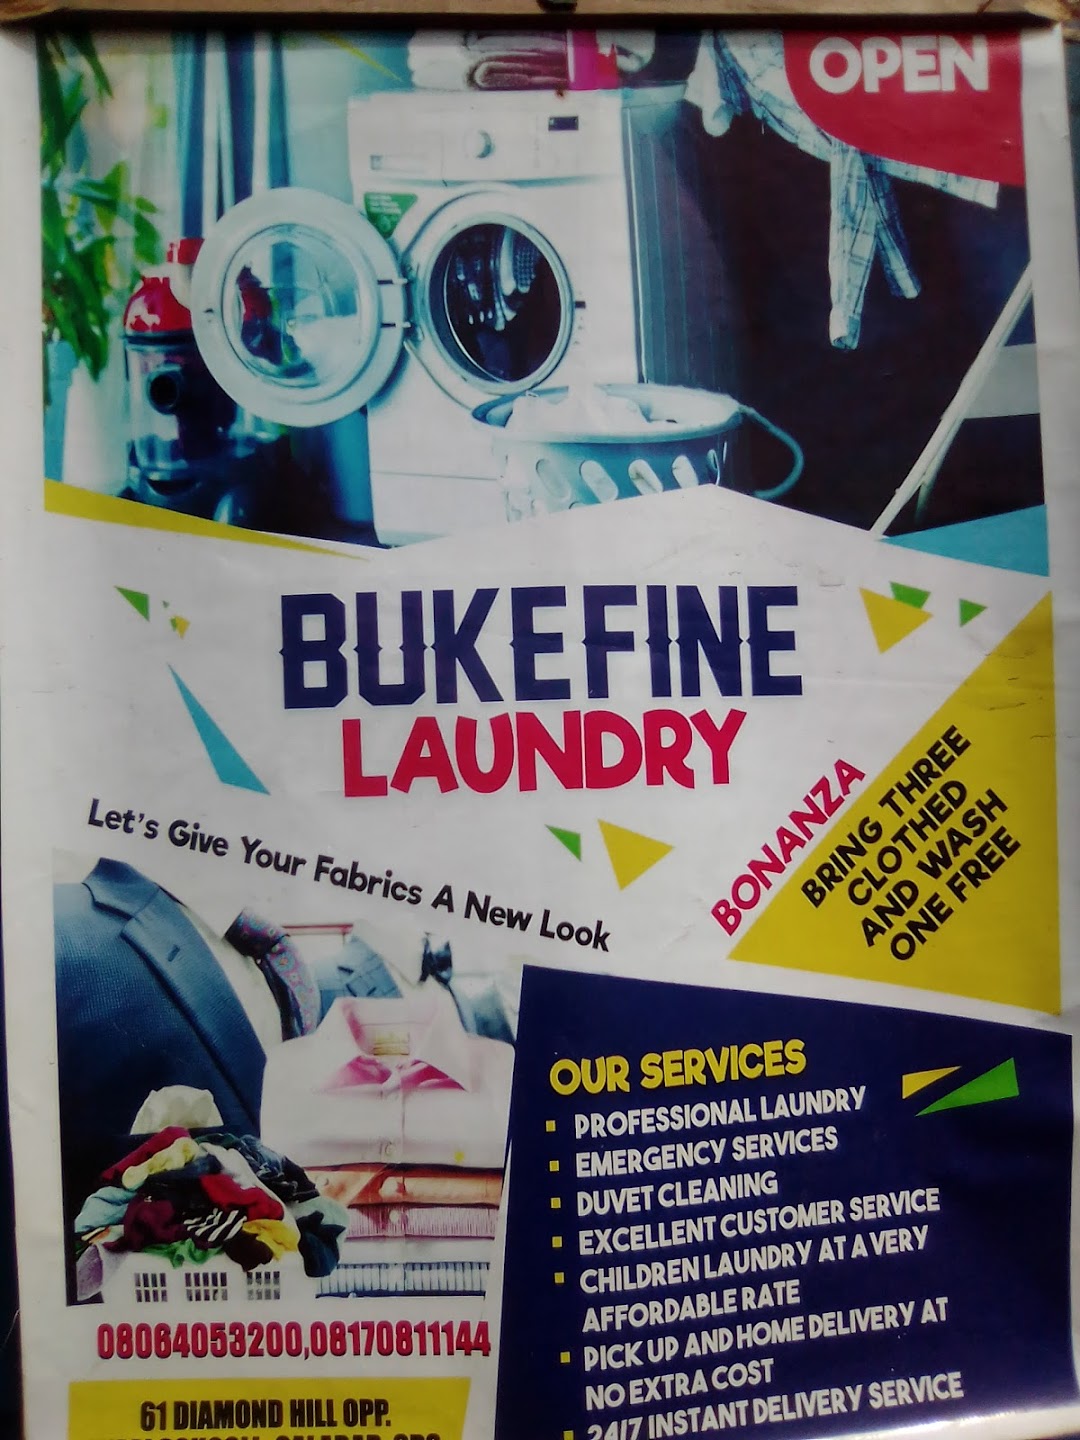 Bukefine laundry